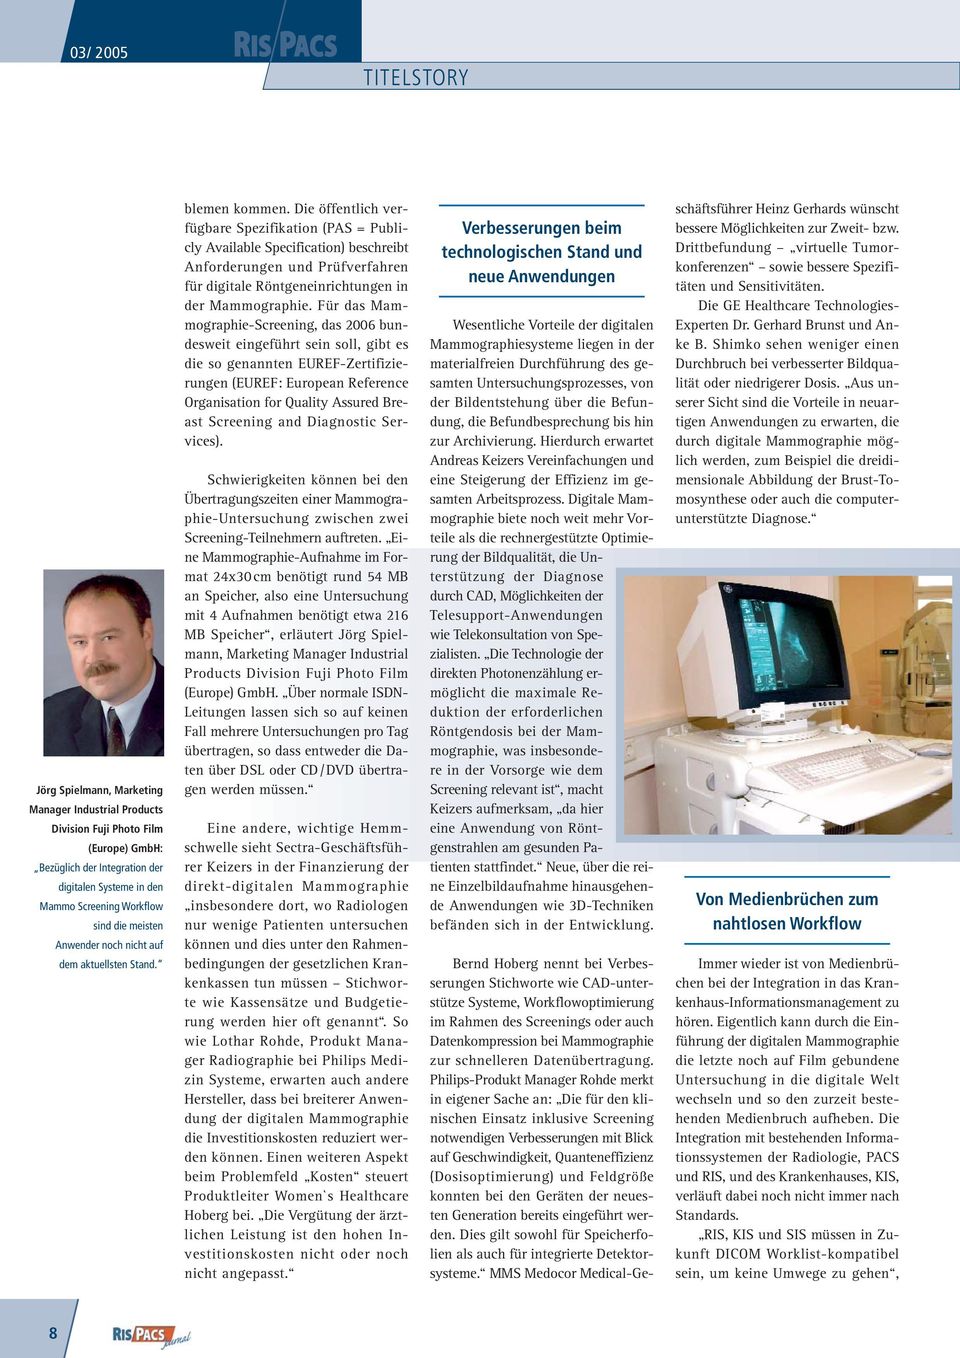 Die öffentlich verfügbare Spezifikation (PAS = Publicly Available Specification) beschreibt Anforderungen und Prüfverfahren für digitale Röntgeneinrichtungen in der Mammographie.